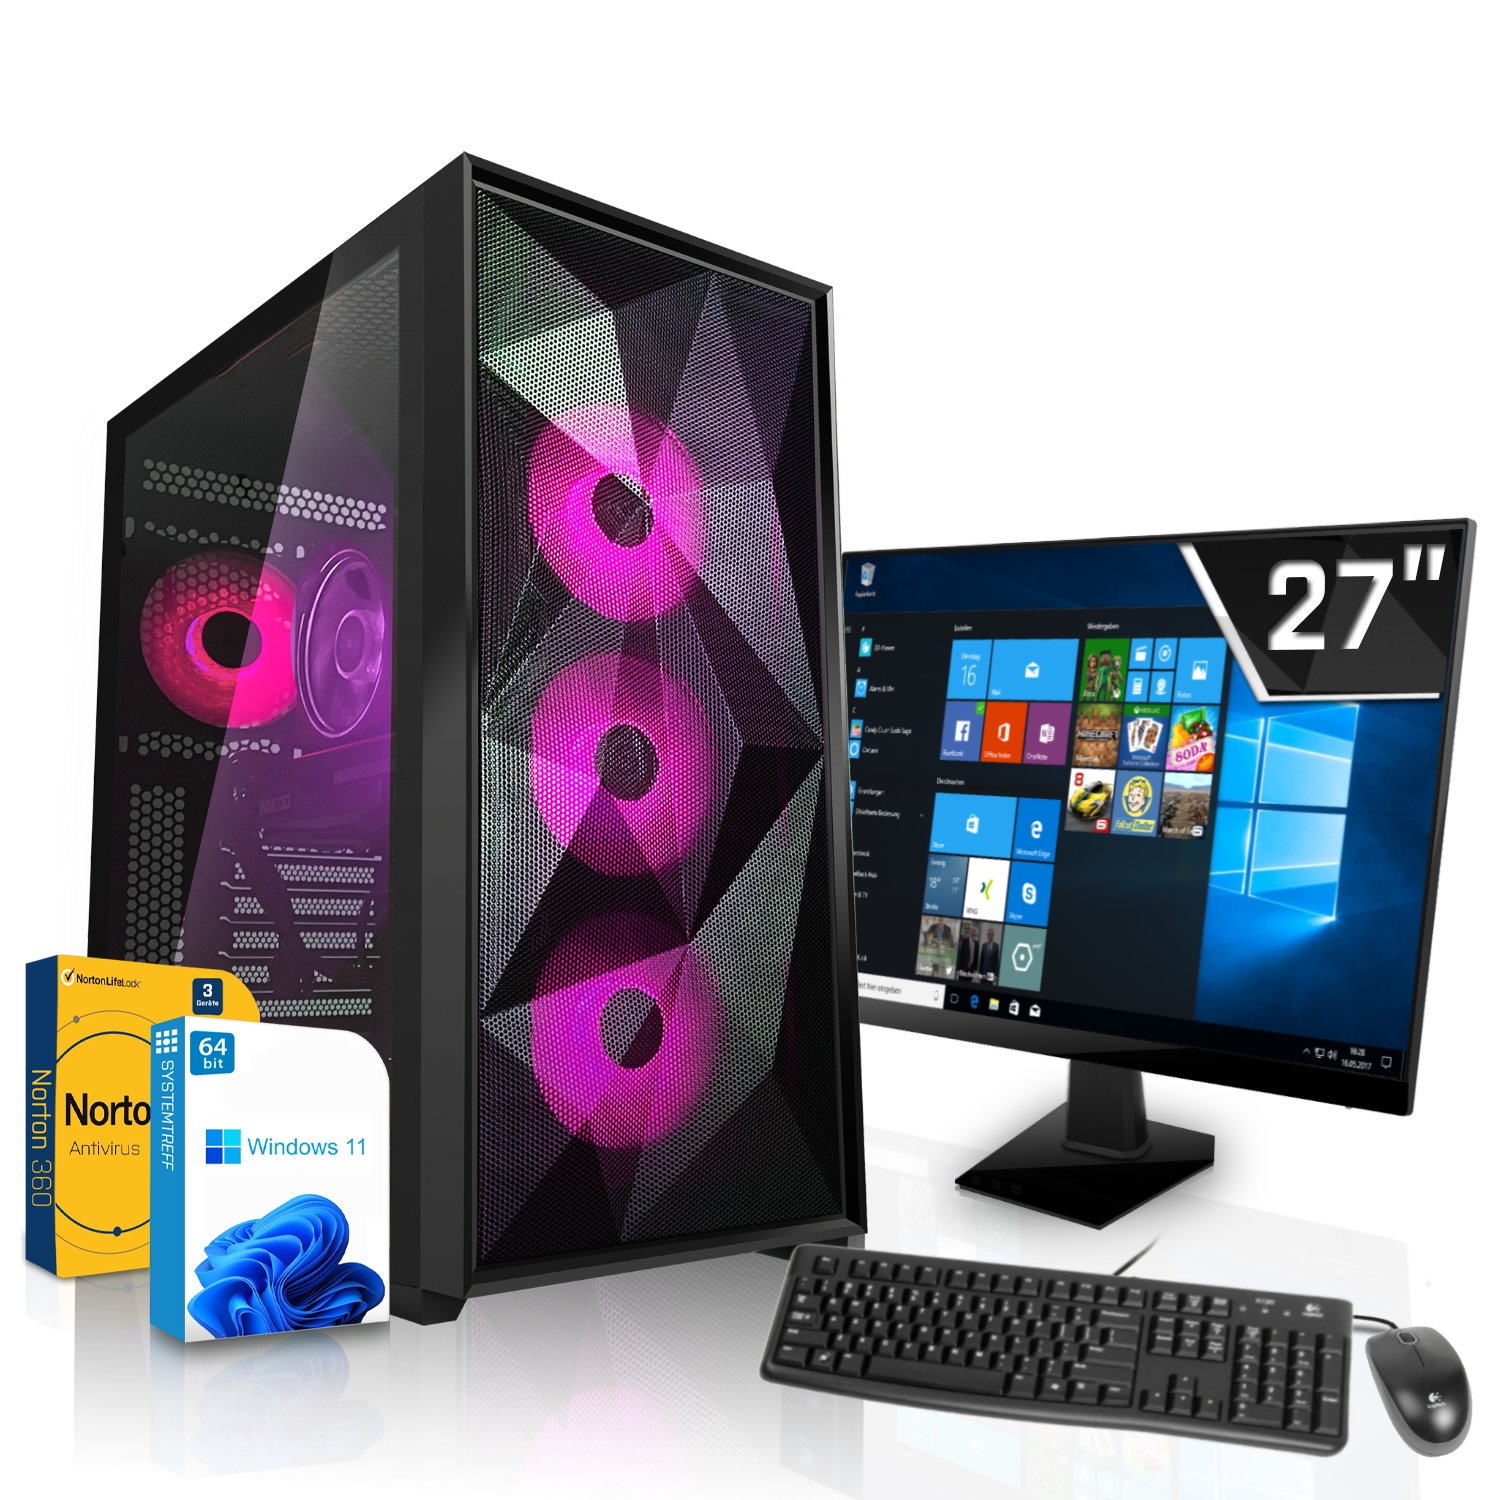 SYSTEMTREFF Gaming GB AMD Komplett Komplett 12 Ryzen 5800X Prozessor, 32 5800X, RAM, 1000 GB GB mit PC mSSD, 7